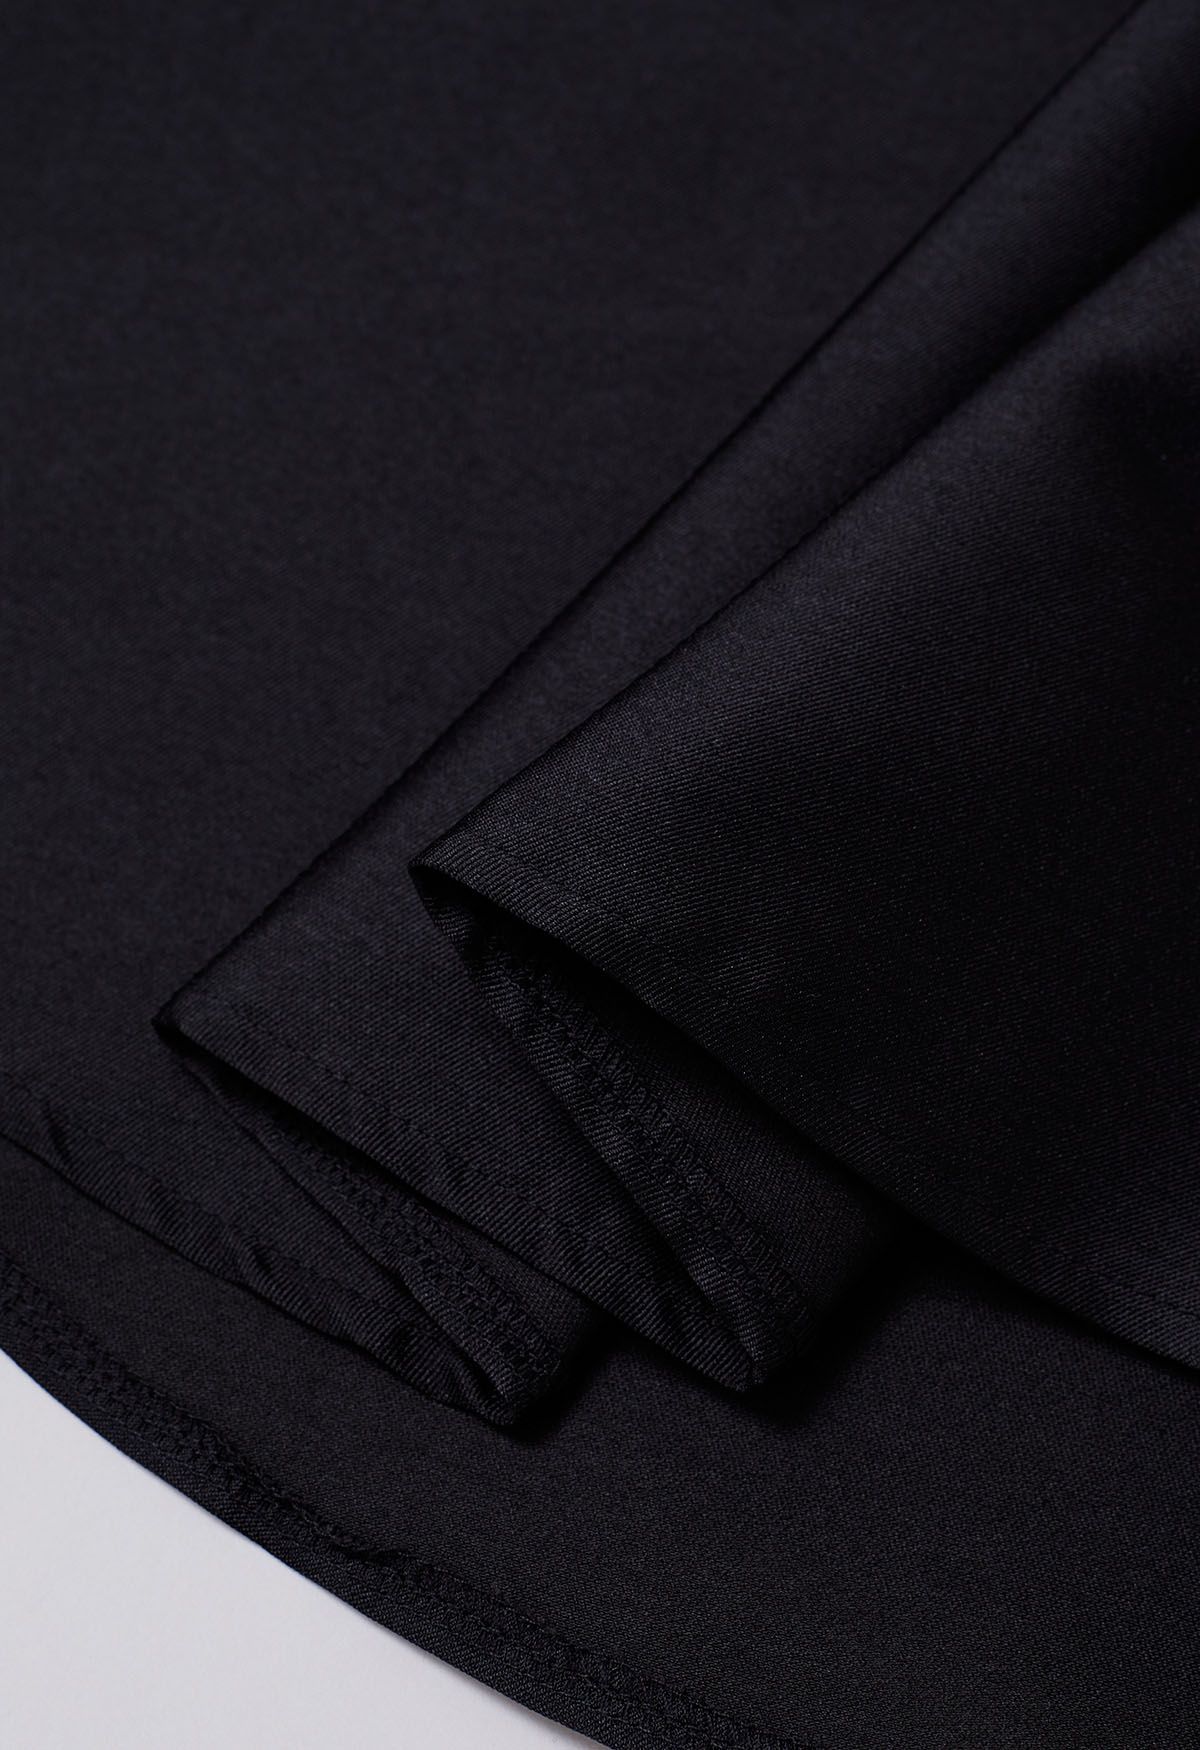 Elegante falda midi plisada de corte A con bolsillos laterales en negro